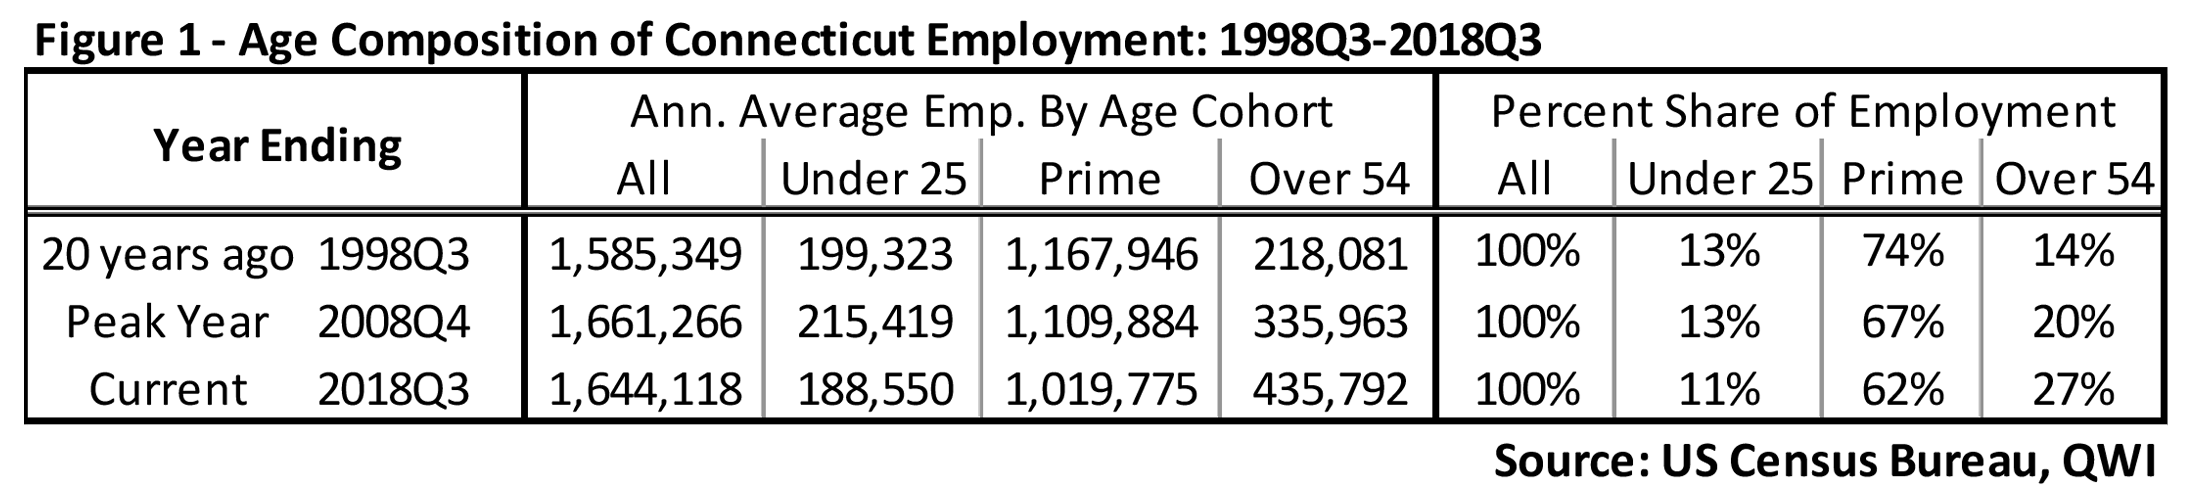 Figure 1: Age Composition of Connecticut Employment: 1998Q3-2018Q3